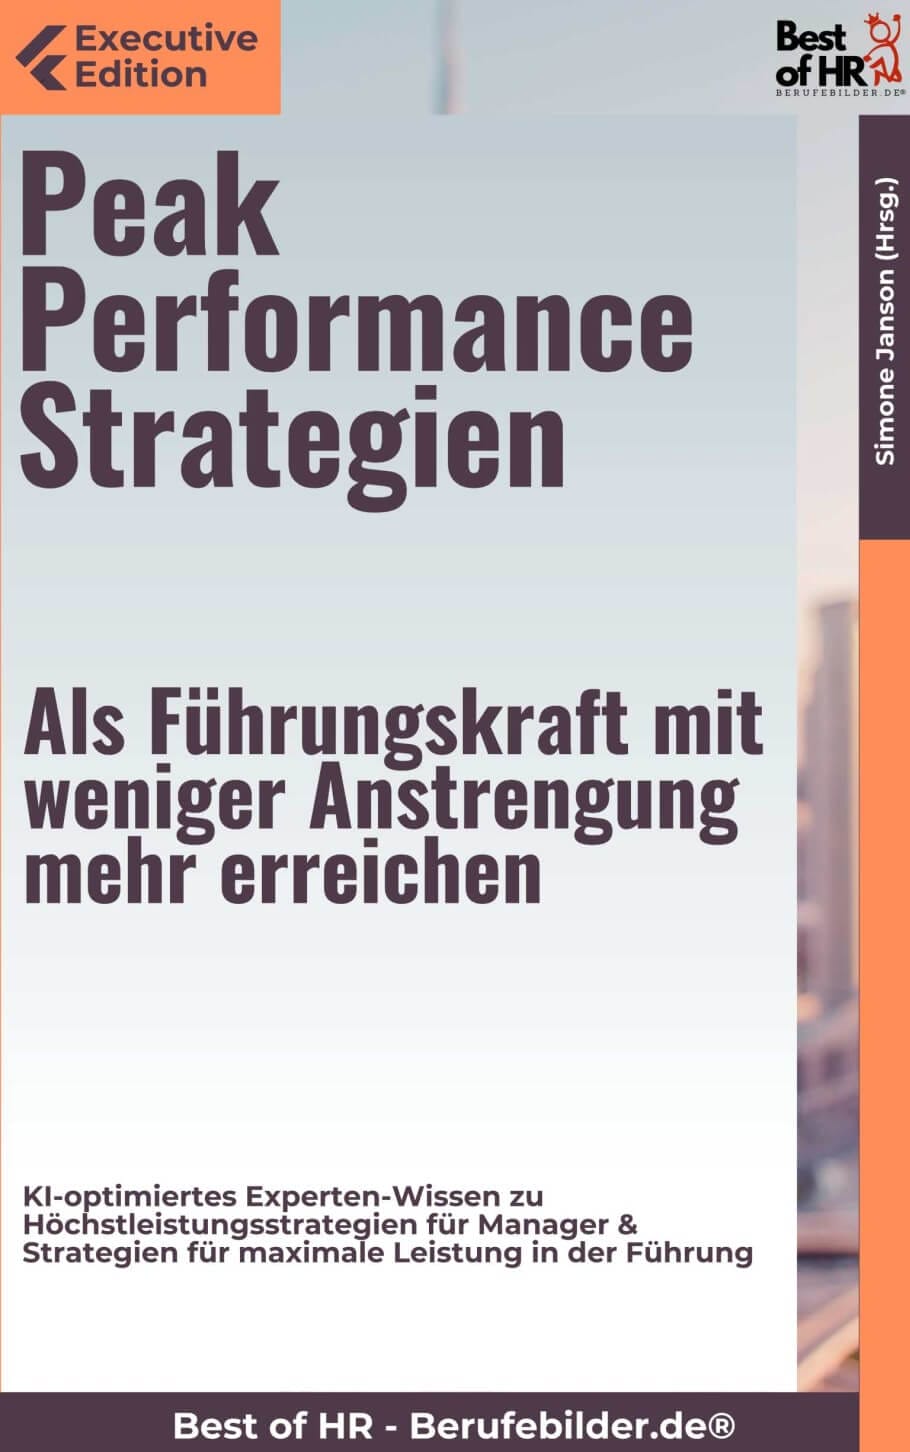 Peak Performance Strategien – Als Führungskraft mit weniger Anstrengung mehr erreichen